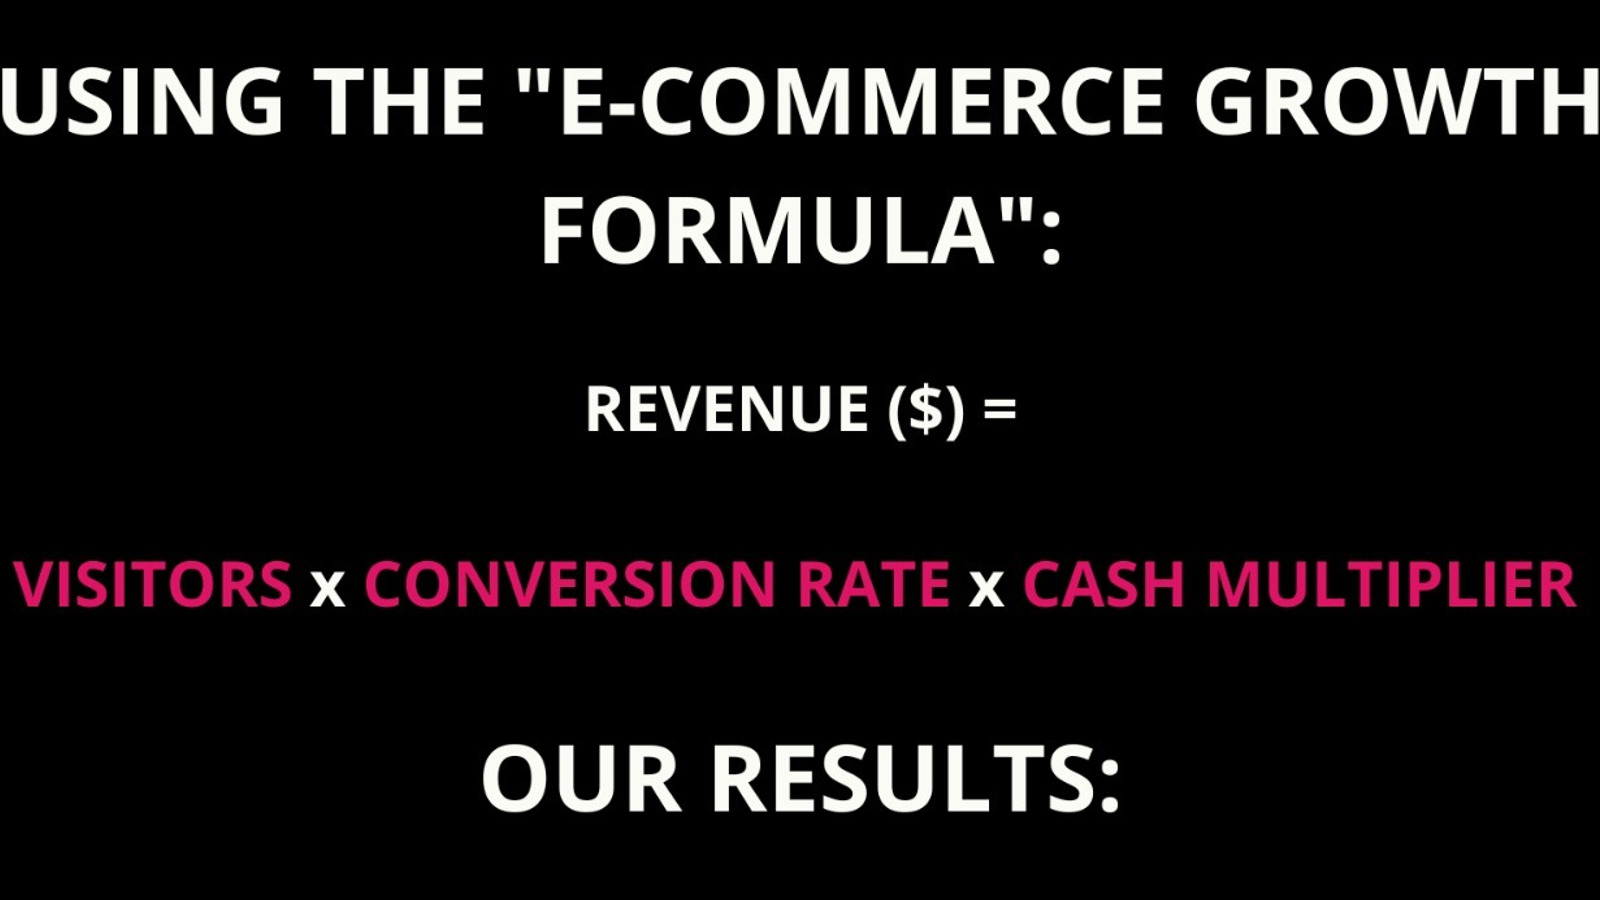 E-Commerce Growth Formula:
Revenue = Visitors X Conversion Rate X Cash Multiplier